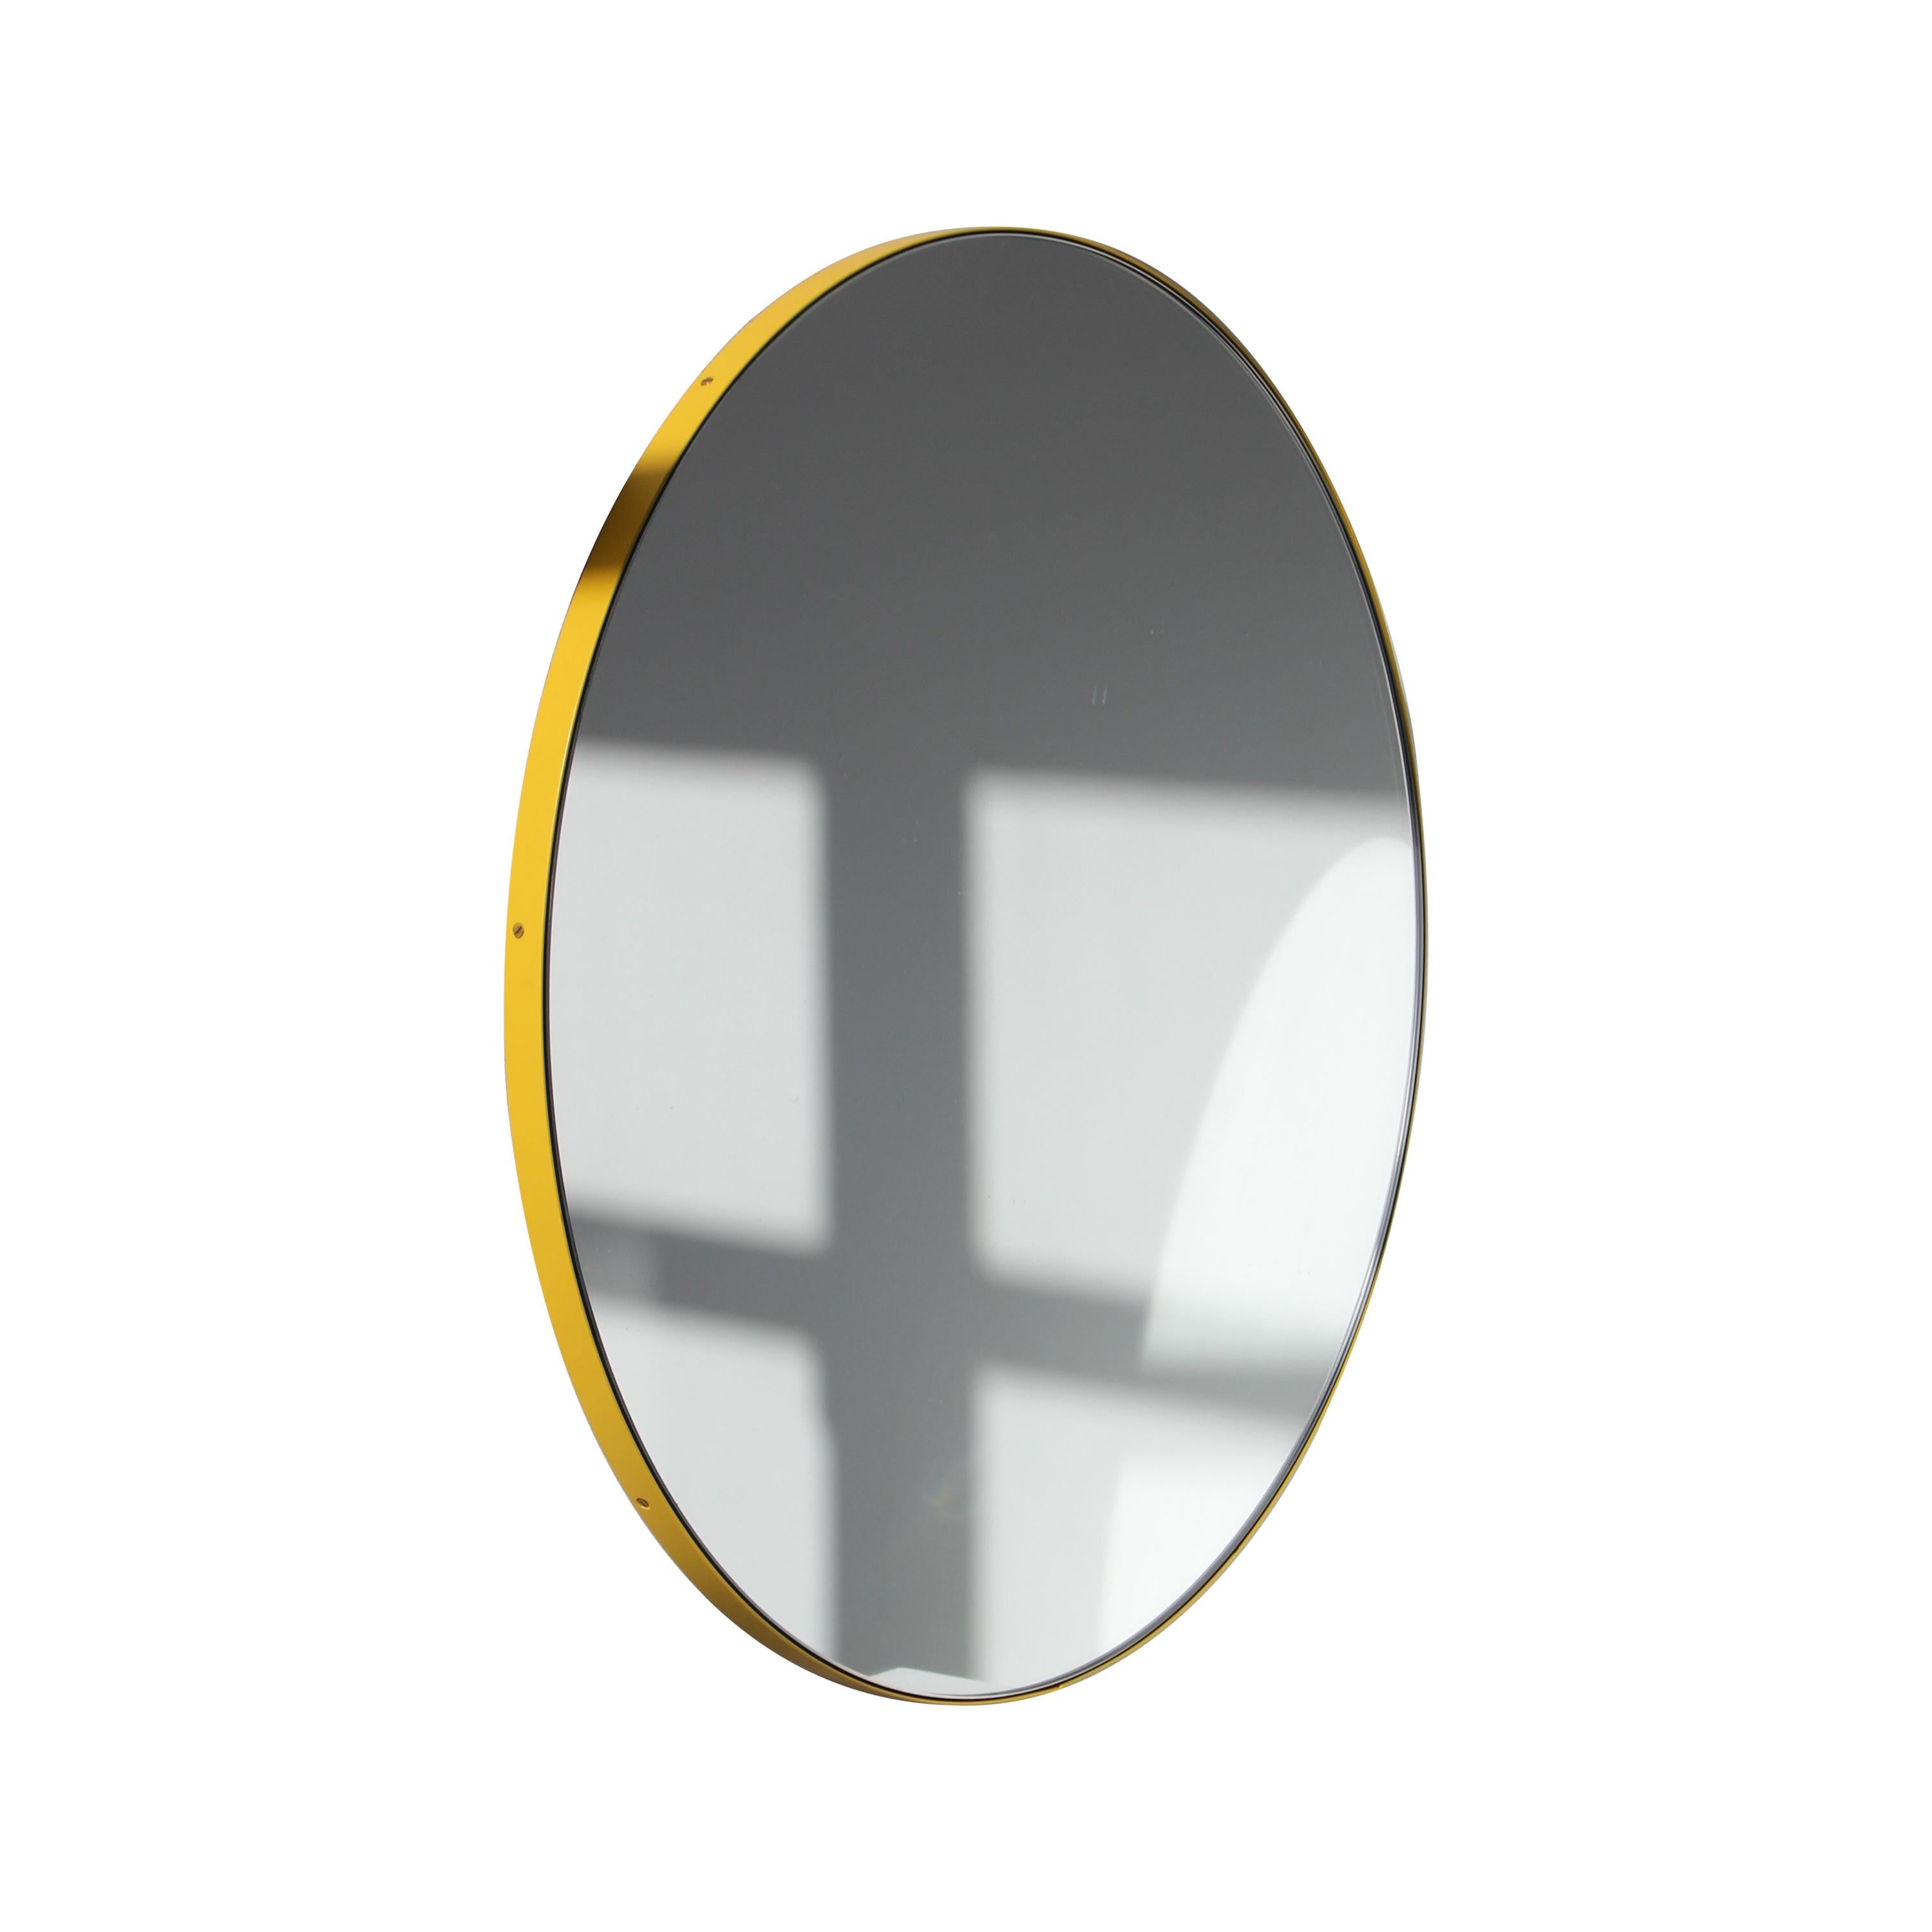 Orbis Round Modern Handcrafted Mirror with Yellow Frame, Medium